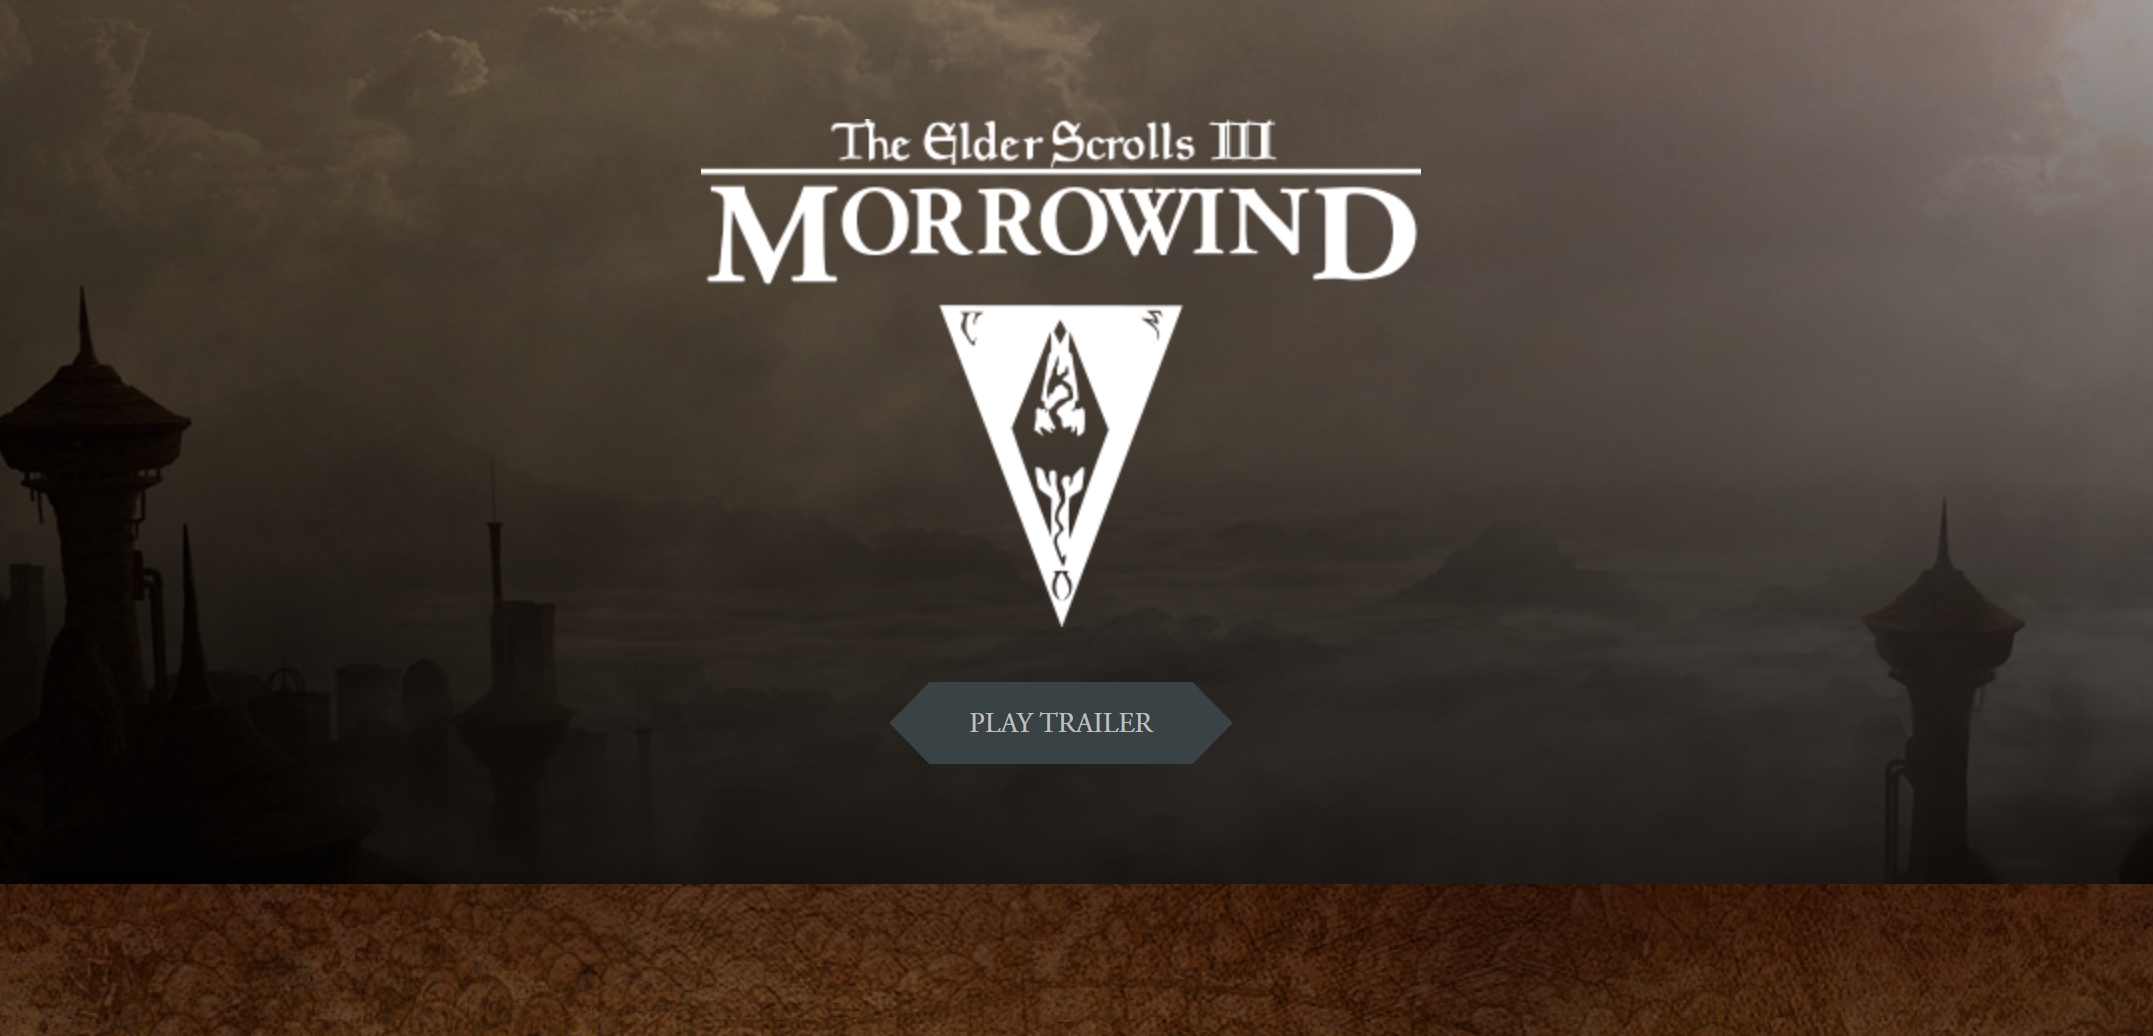 GRATIS KUN I DAG: The Elder Scrolls III: Morrowind